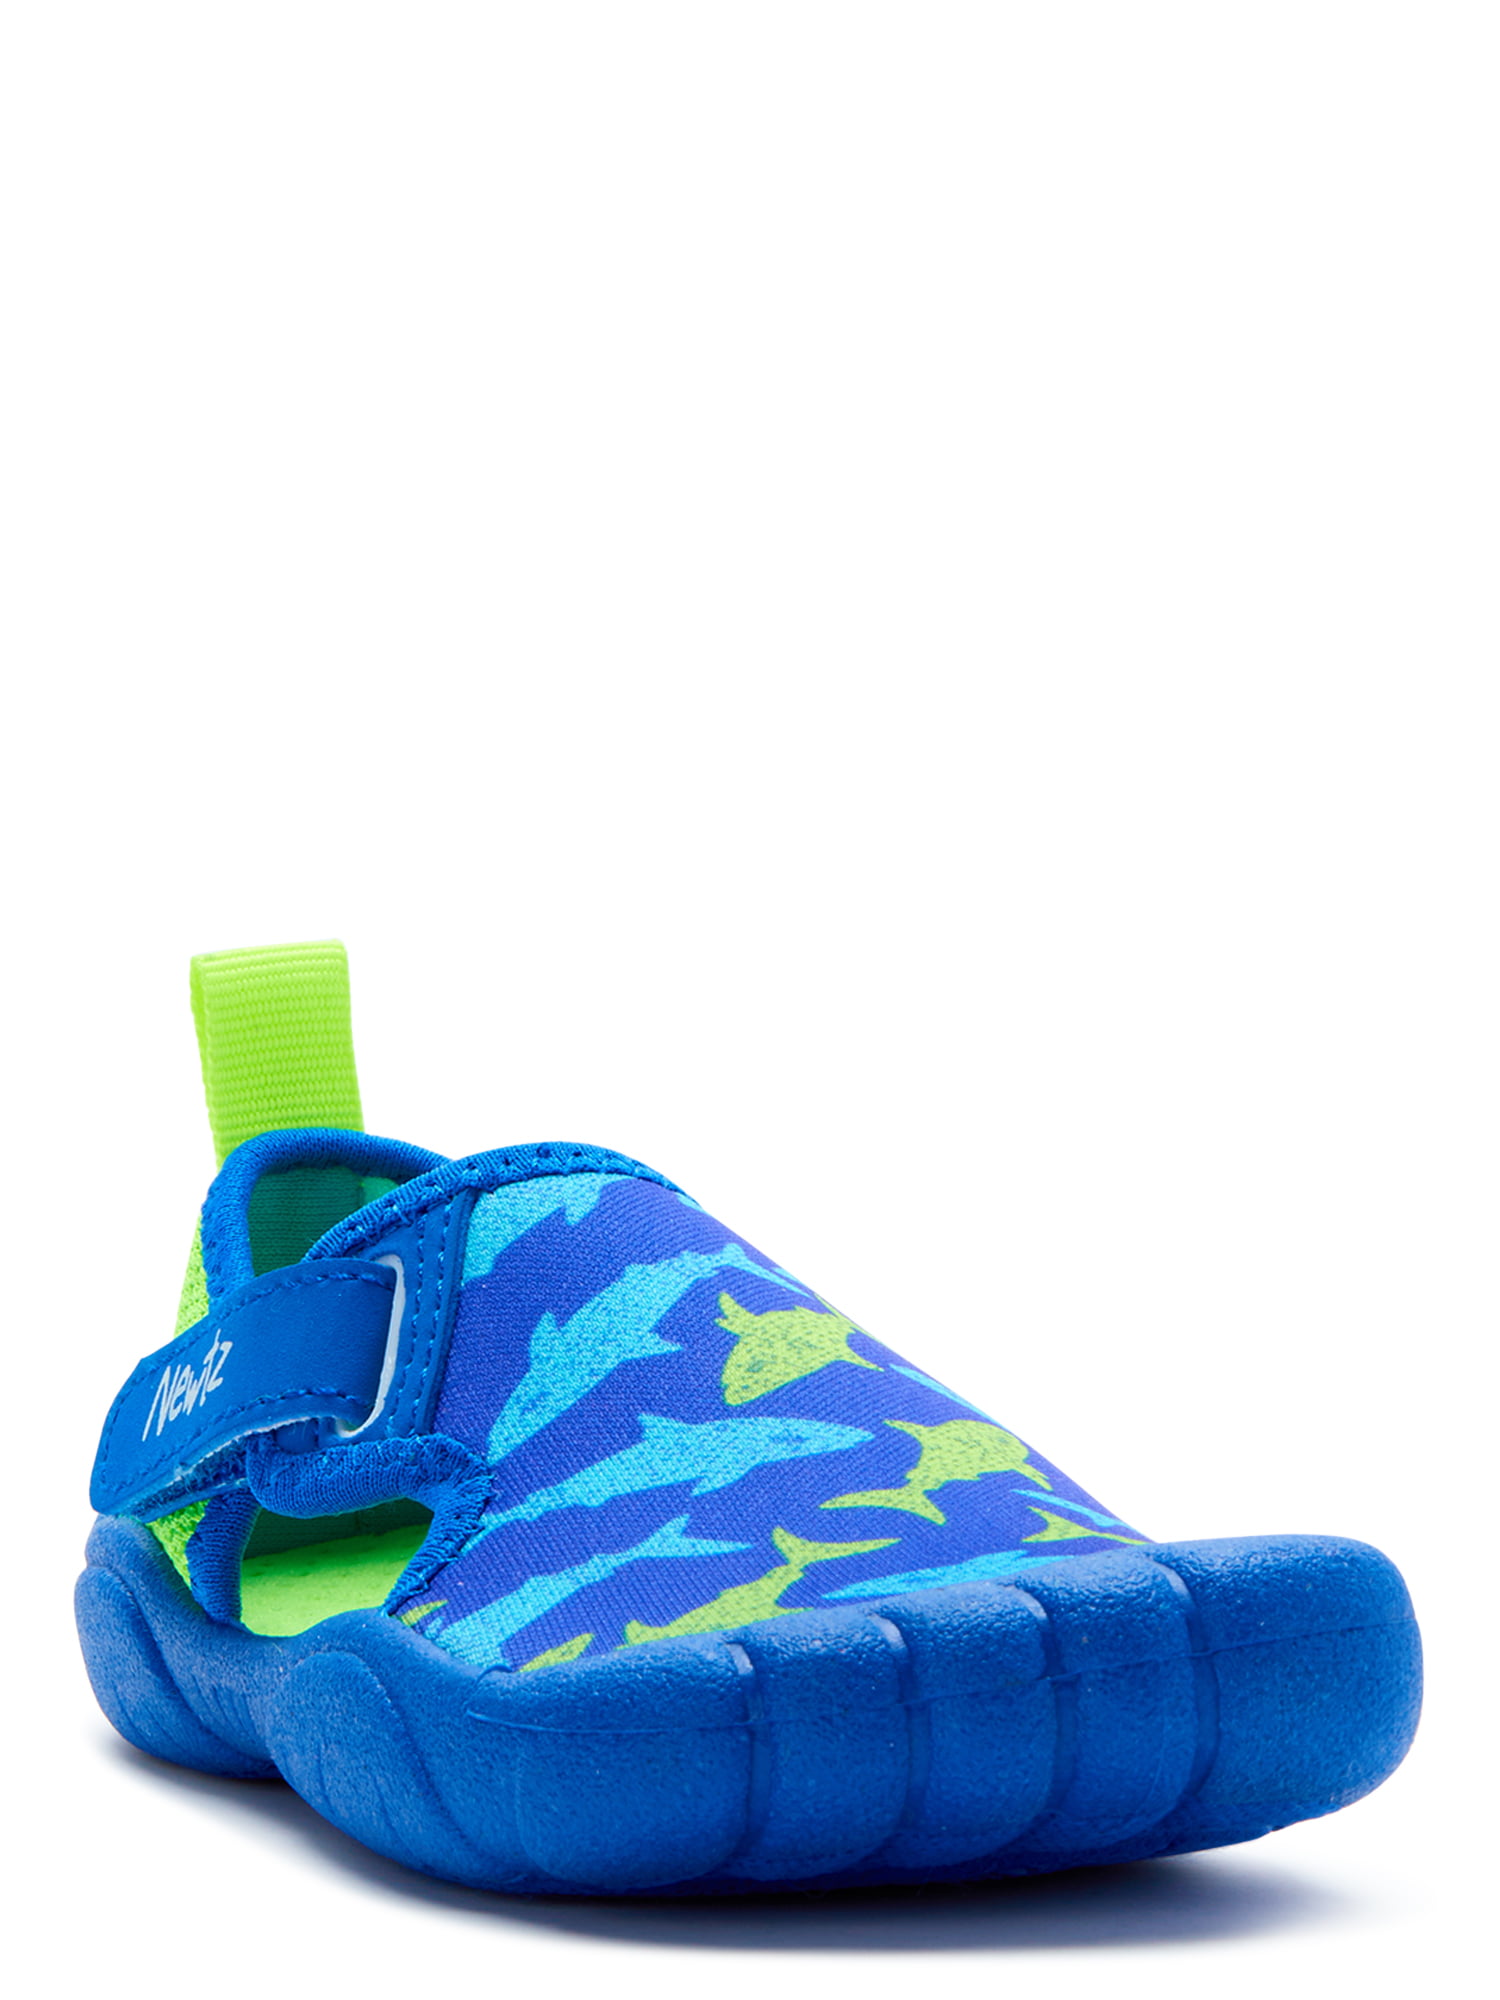 Newtz Toddler Boys Shark Water Shoes 